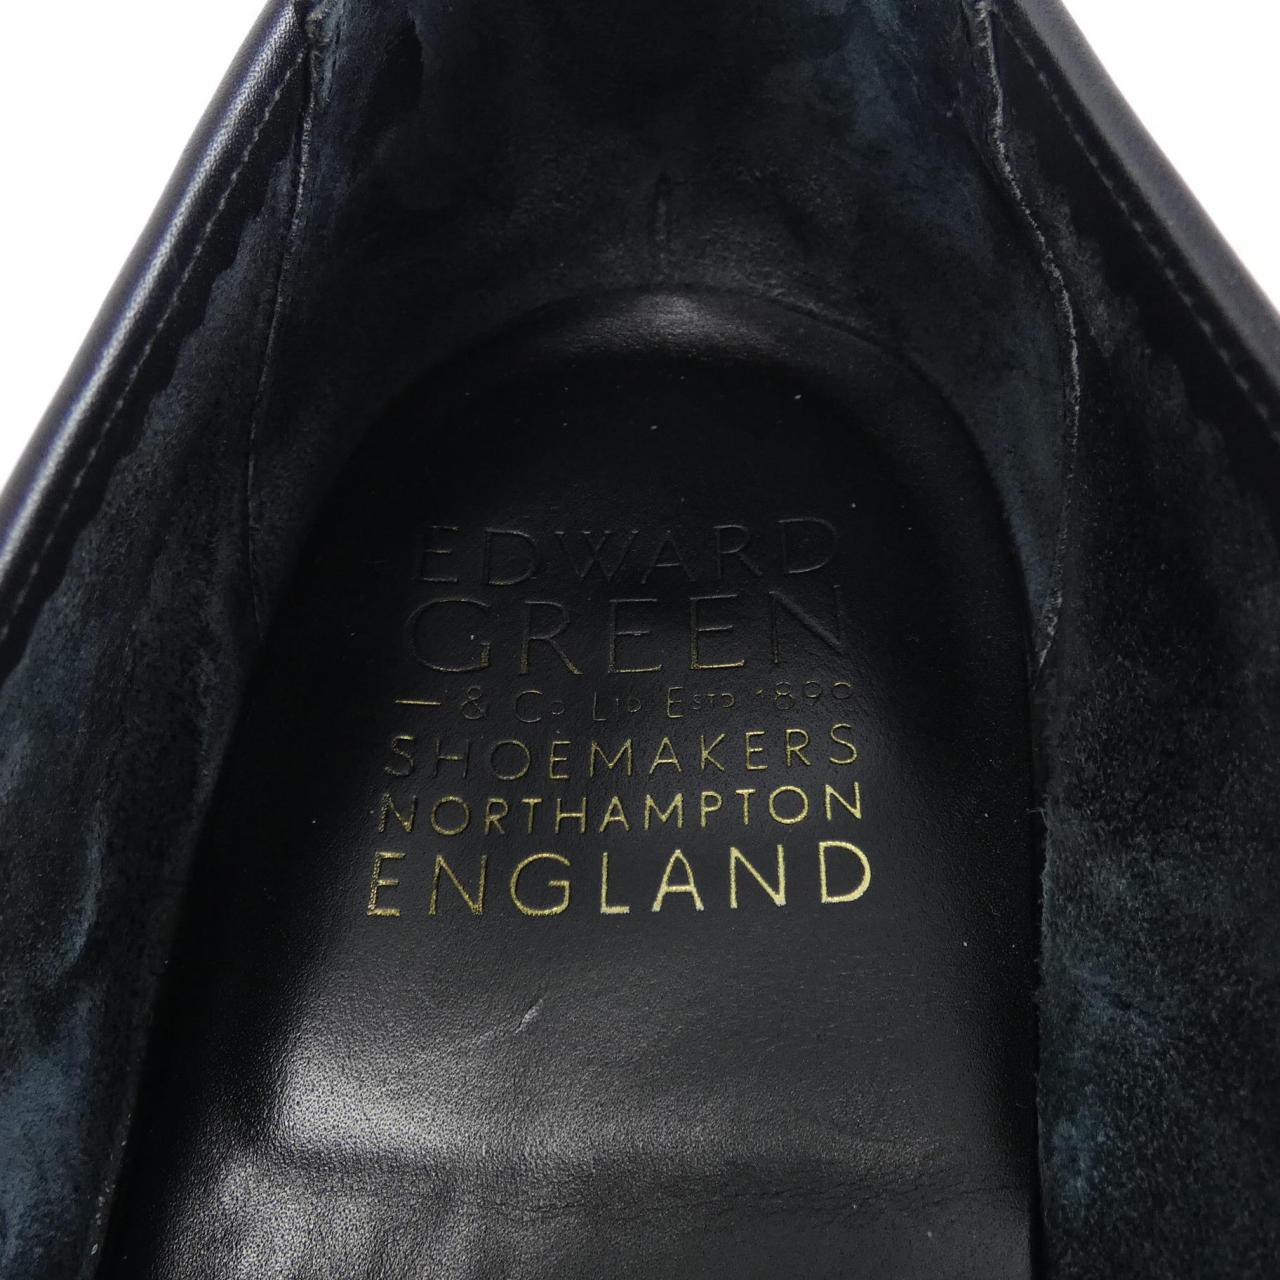 愛德華綠EDWARD GREEN鞋